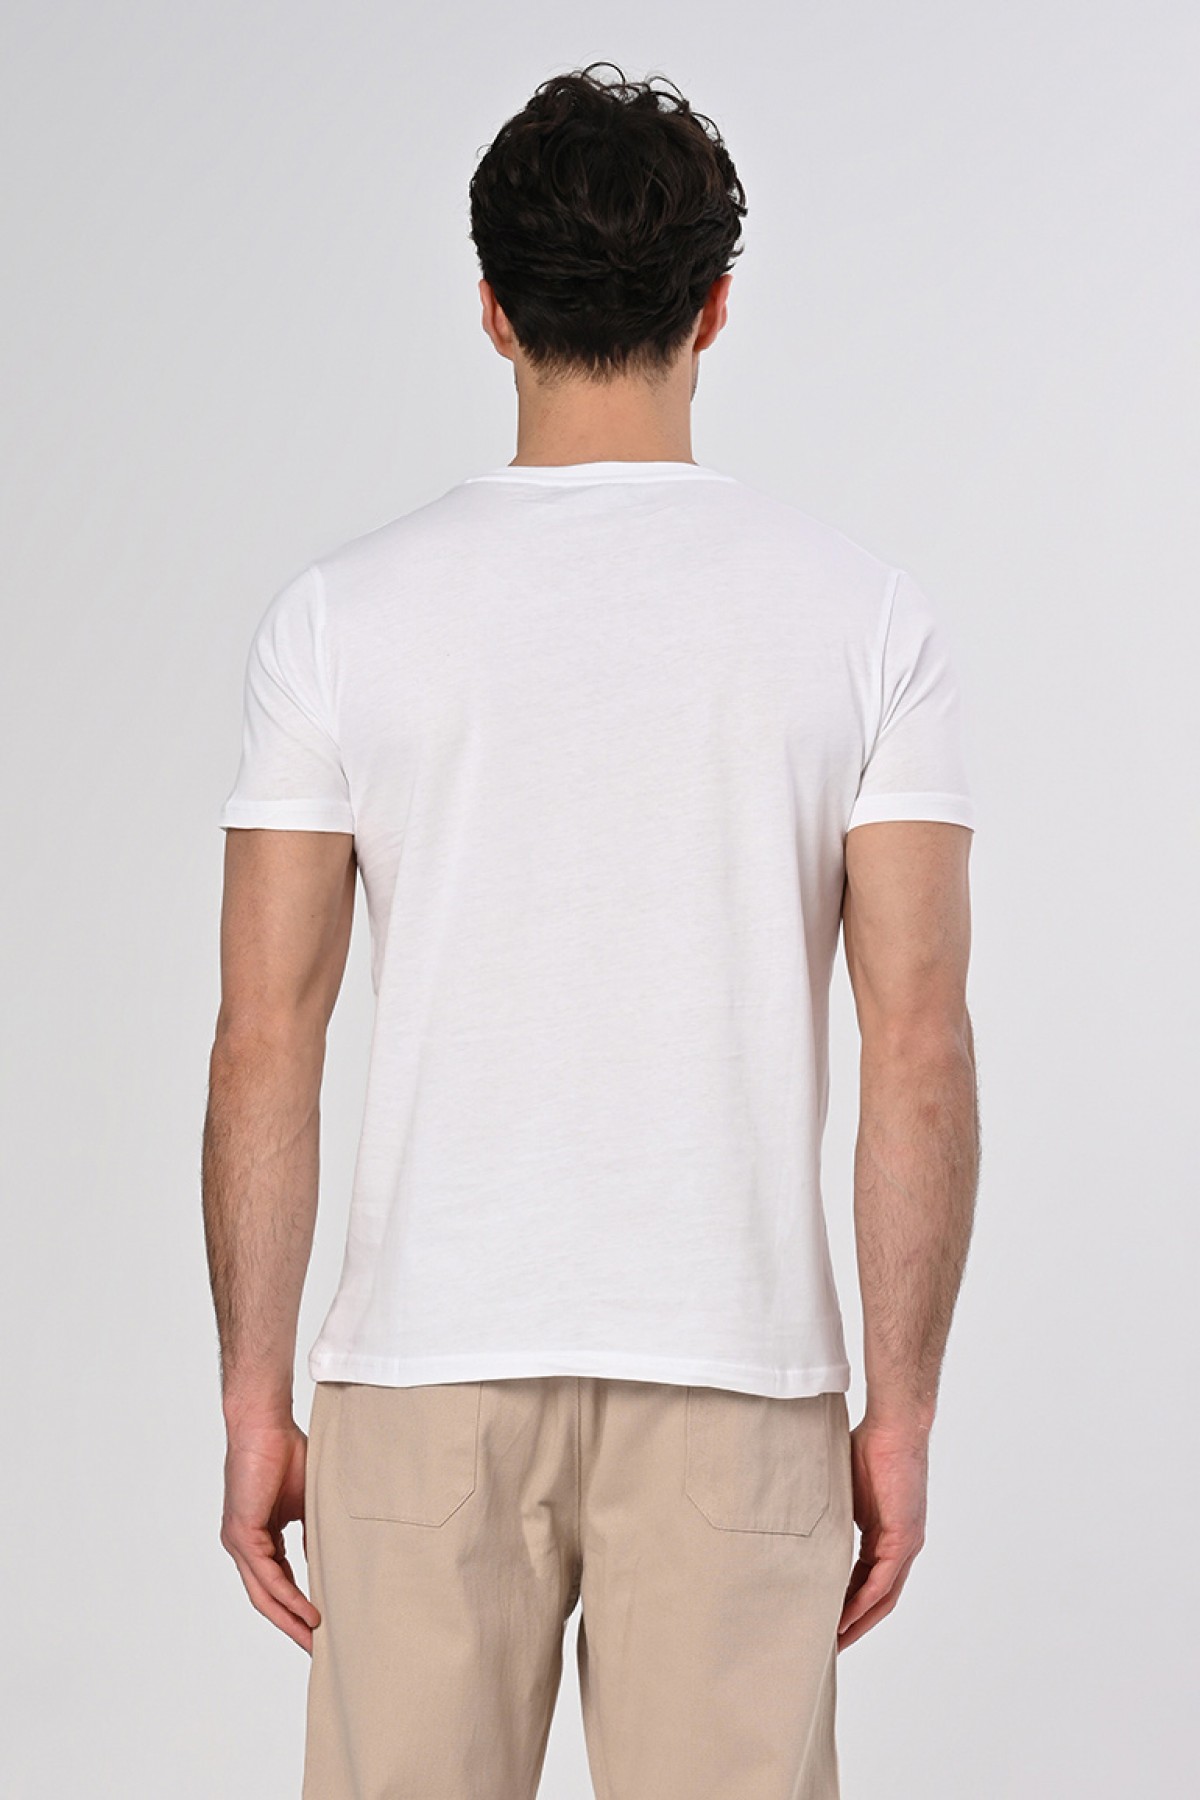 Yeni Sezon Elif Tasarım Pamuk Bisiklet Yaka Beyaz T-shirt 23’